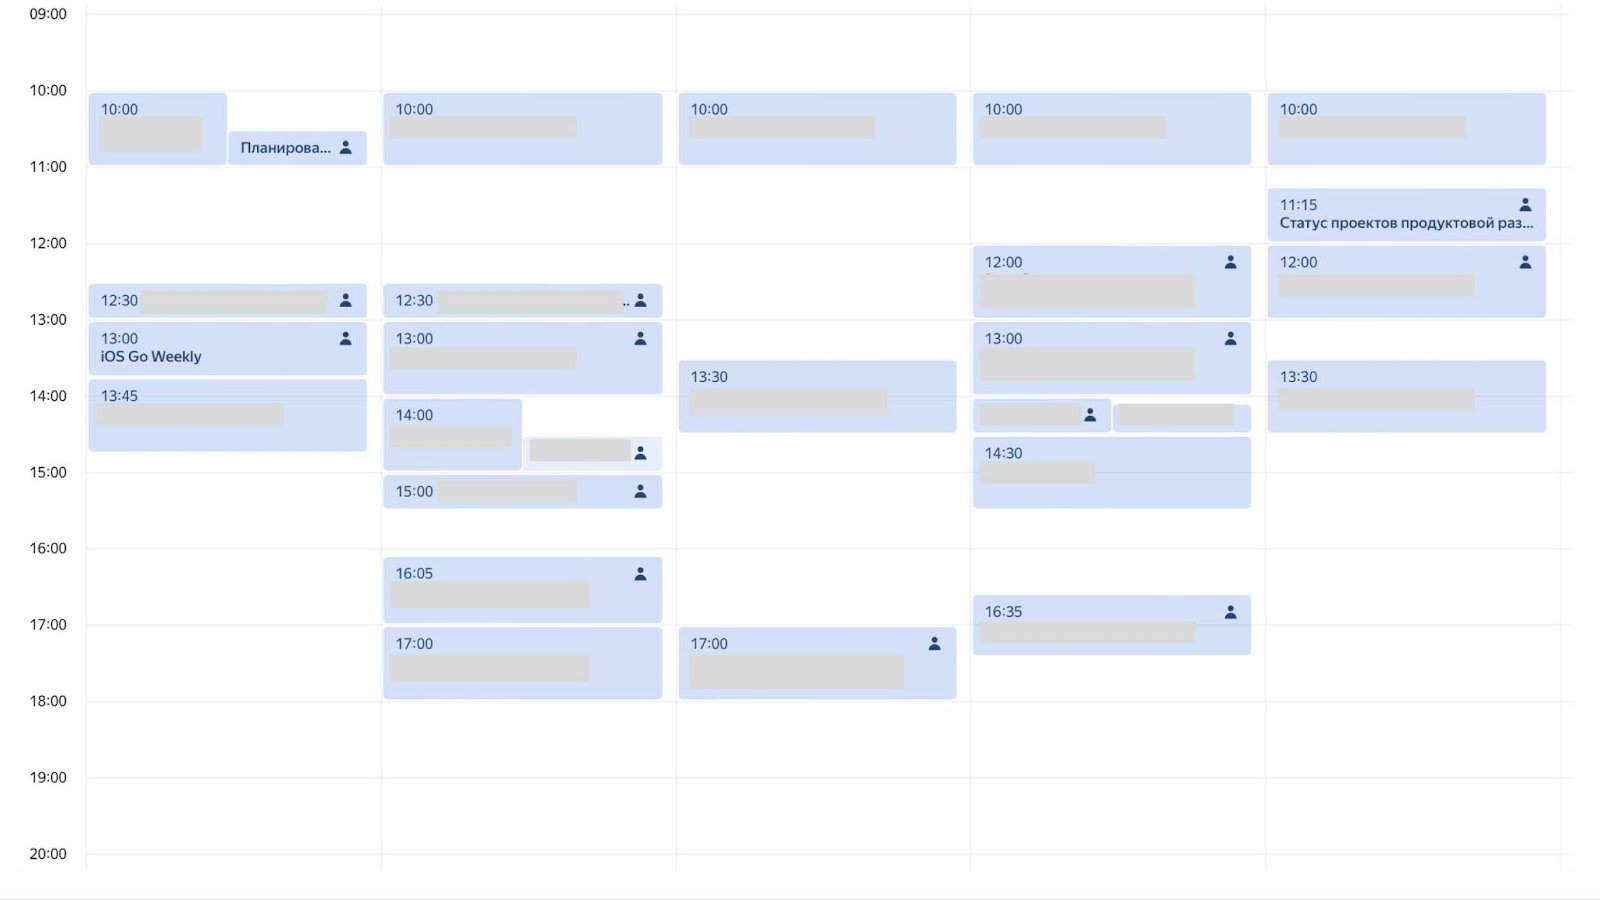 Это пример календаря тимлида небольшой команды. Изменения пока минимальные: встреч стало побольше, но примерно 50% времени уходит на написание кода, ревью и проектирование решений